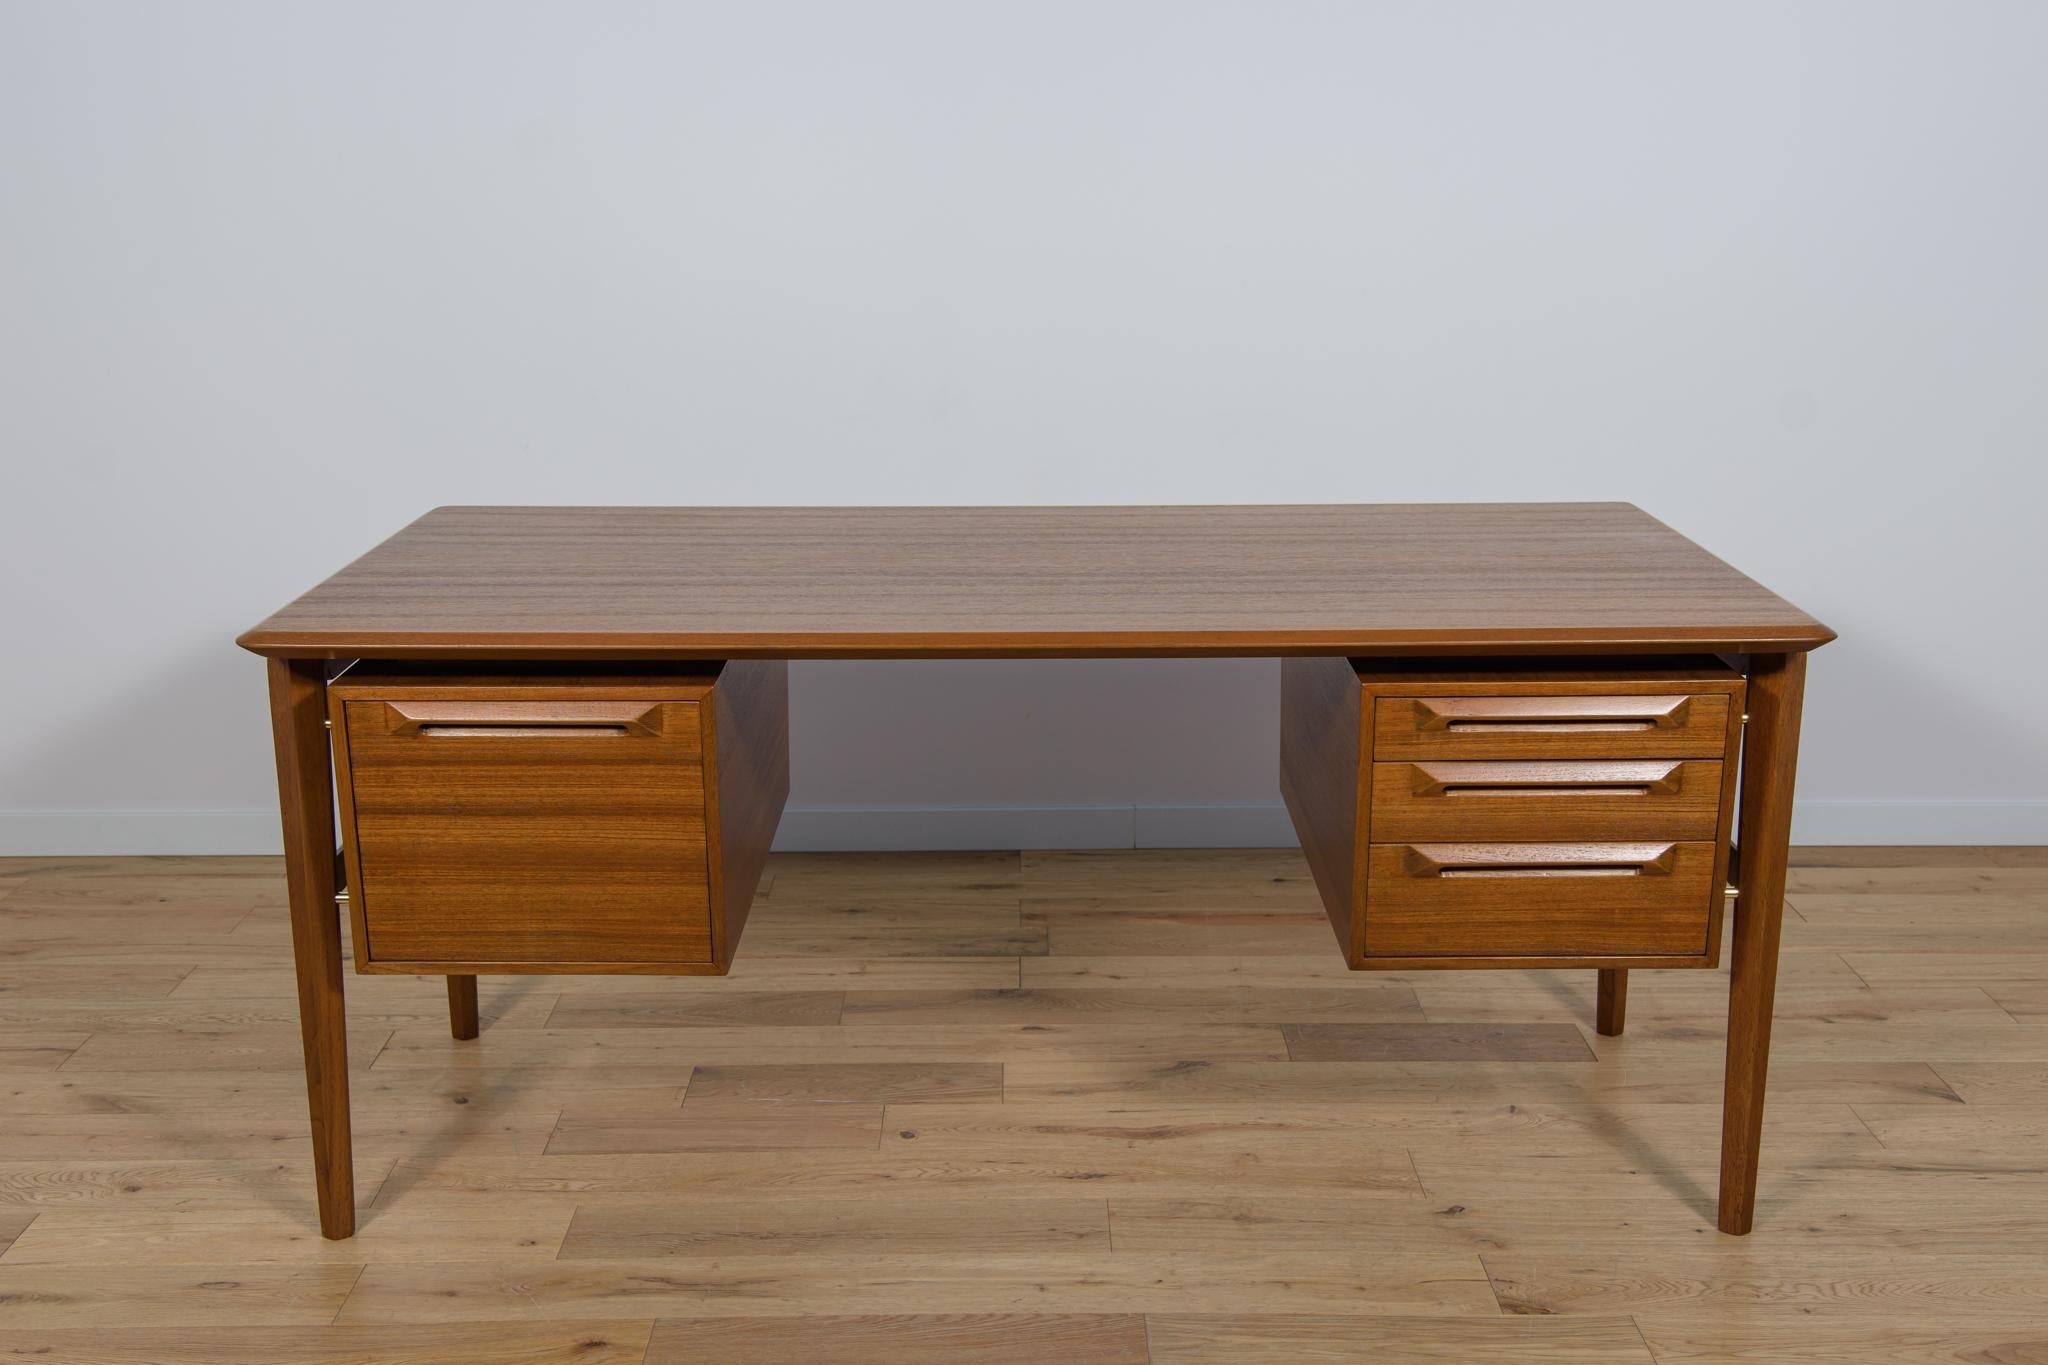 Der Schreibtisch wurde von dem dänischen Designer Ib Kofod-Larsen entworfen und in den 1950er Jahren in der schwedischen Fabrik Seffle Möbelfabrik hergestellt. Der Schreibtisch mit einer interessanten modernistischen Form ist ein Beispiel für die